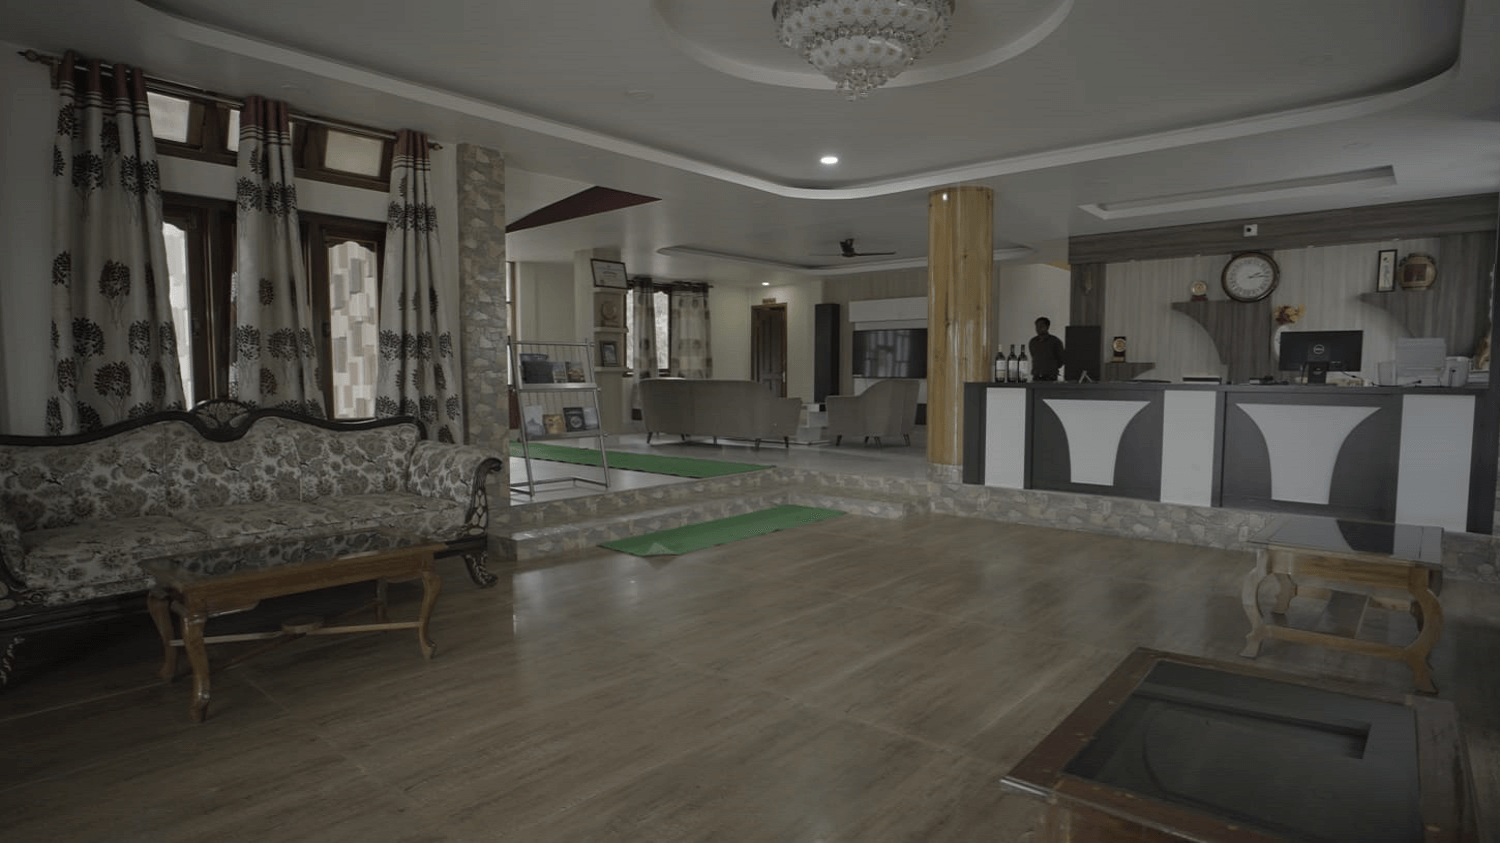 Ziro Palace Inn, ZIRO, Arunachal Pradesh, India